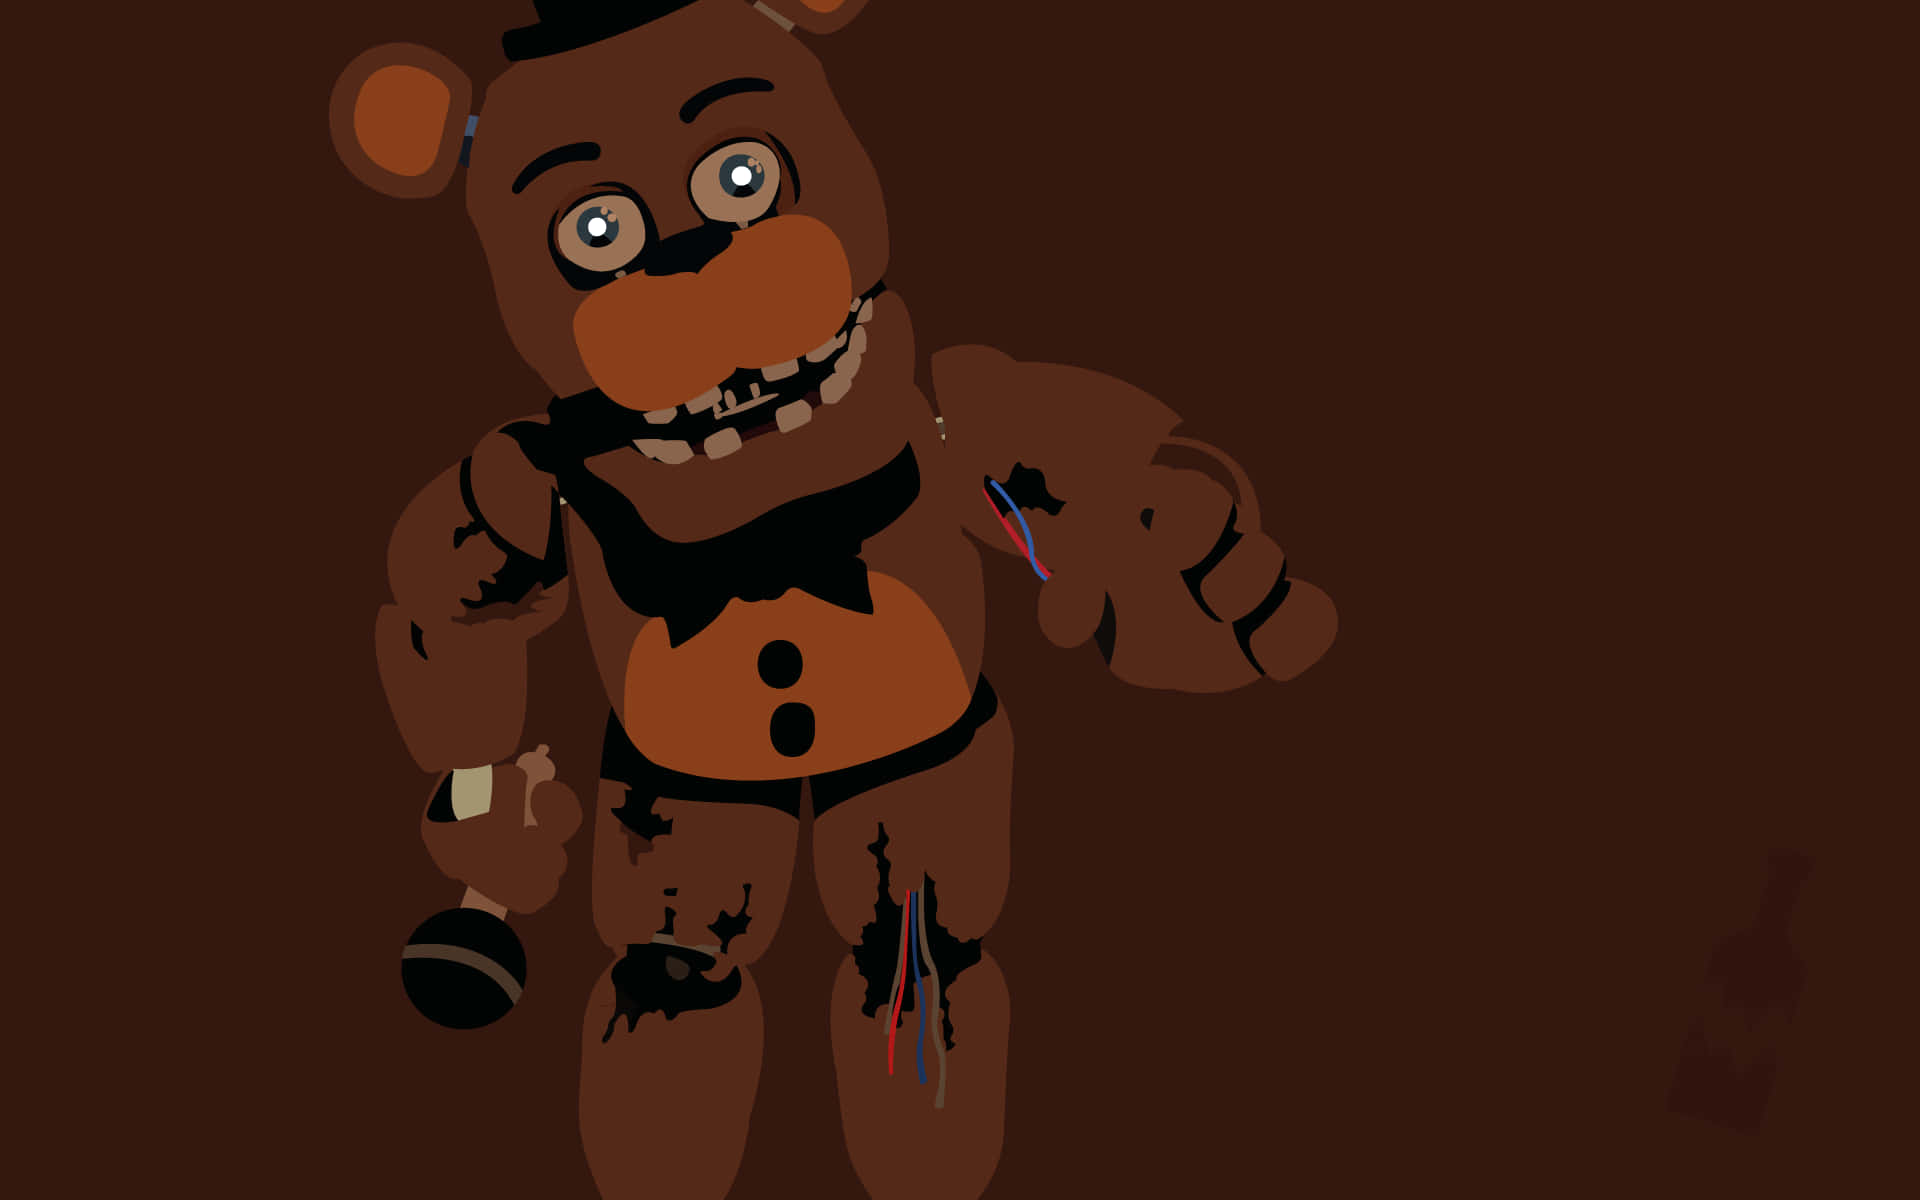 A Teddy Bear With A Gun On His Head